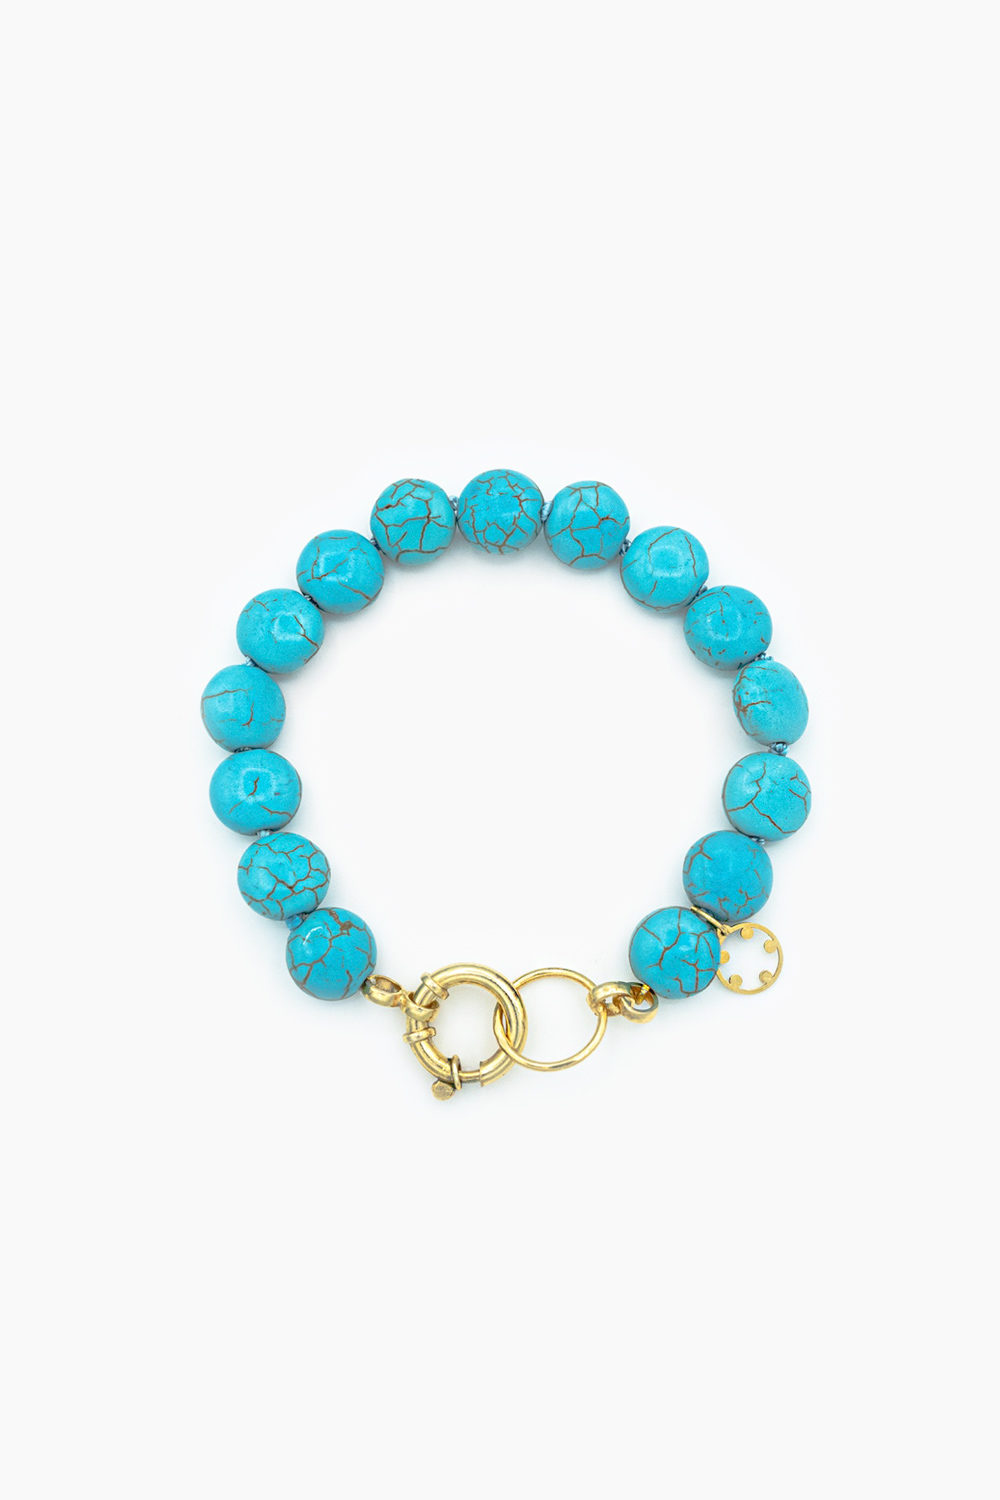 Jewellery Concept: Pulseira Seixo Azul